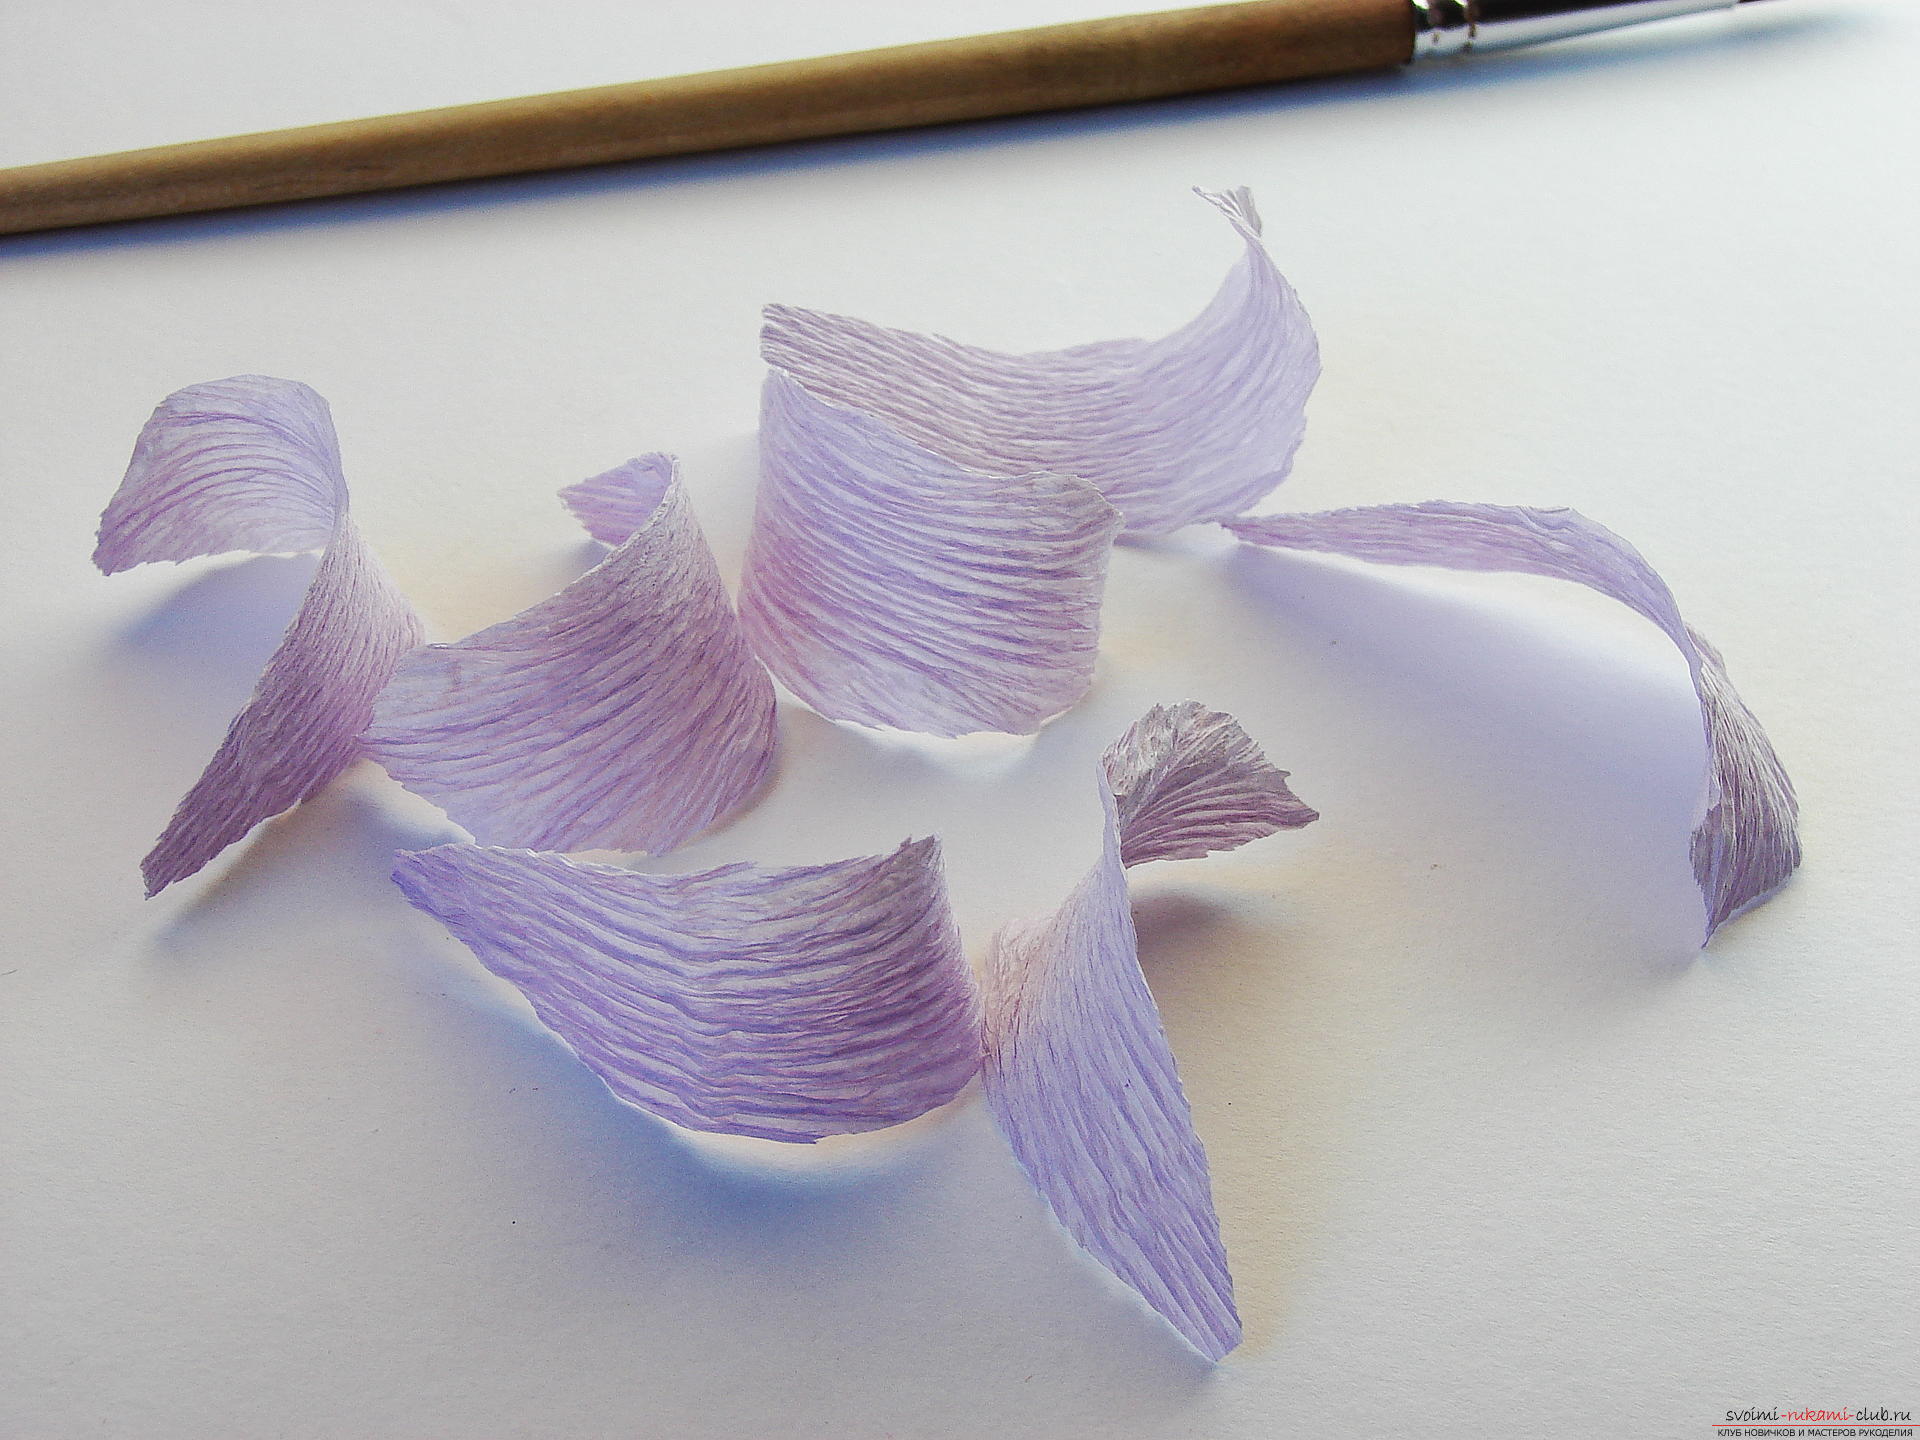 Мастер-класс научит как сделать гофрированные цветы своими руками – лилии из гофрированной бумаги.. Фото №8